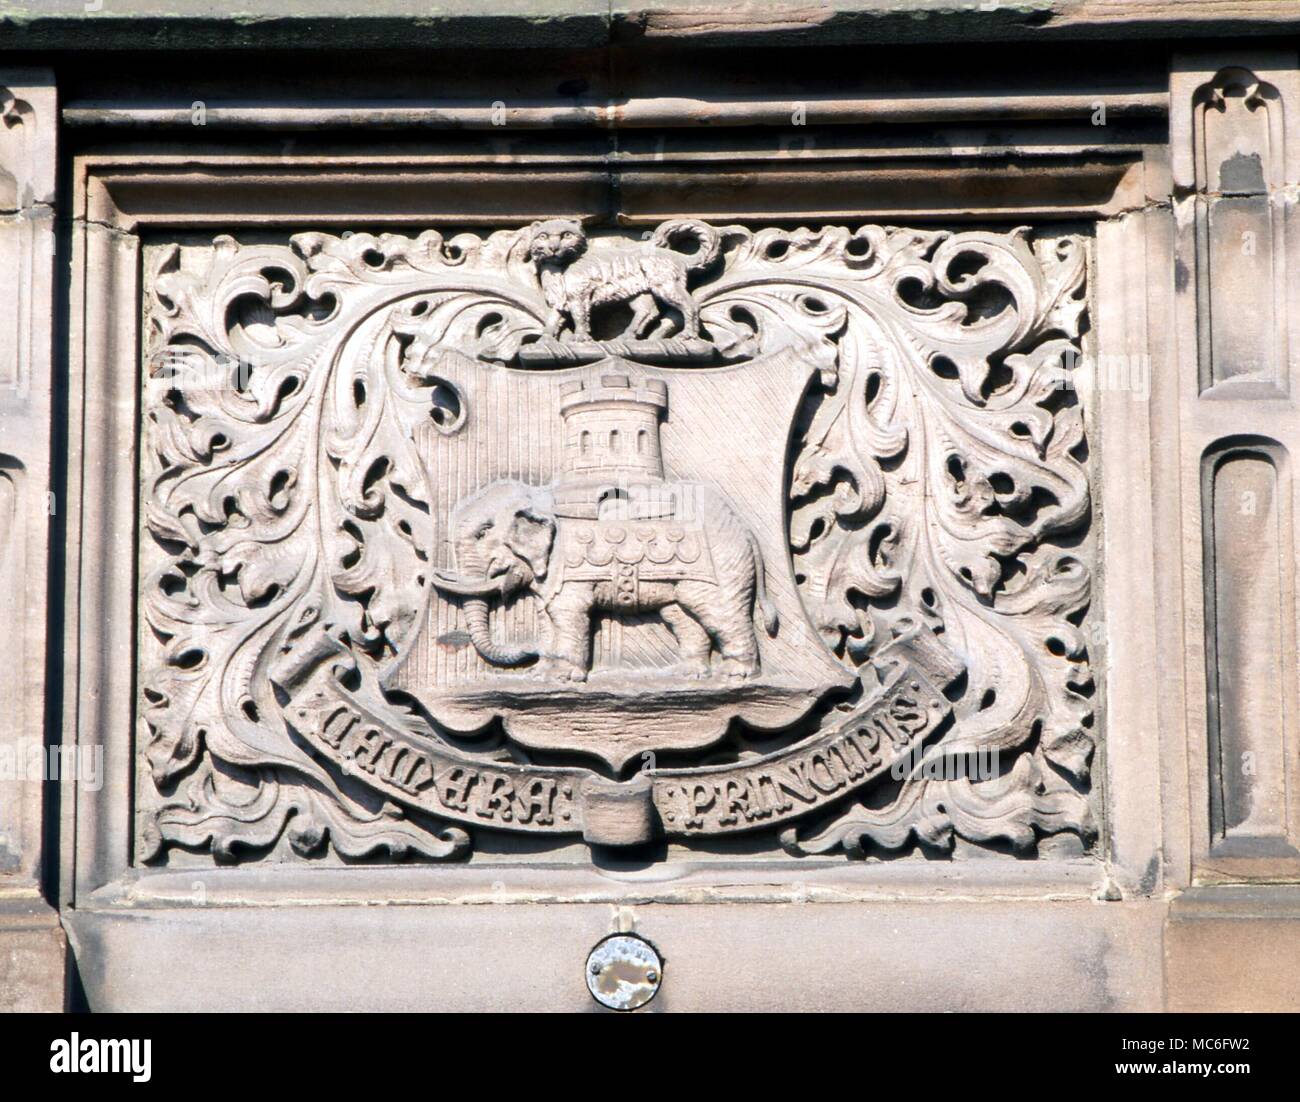 Bas-relief des armoiries de la ville de Coventry, avec le célèbre chat héraldique. Sur la façade de l'Hôtel de Ville, Coventry Banque D'Images